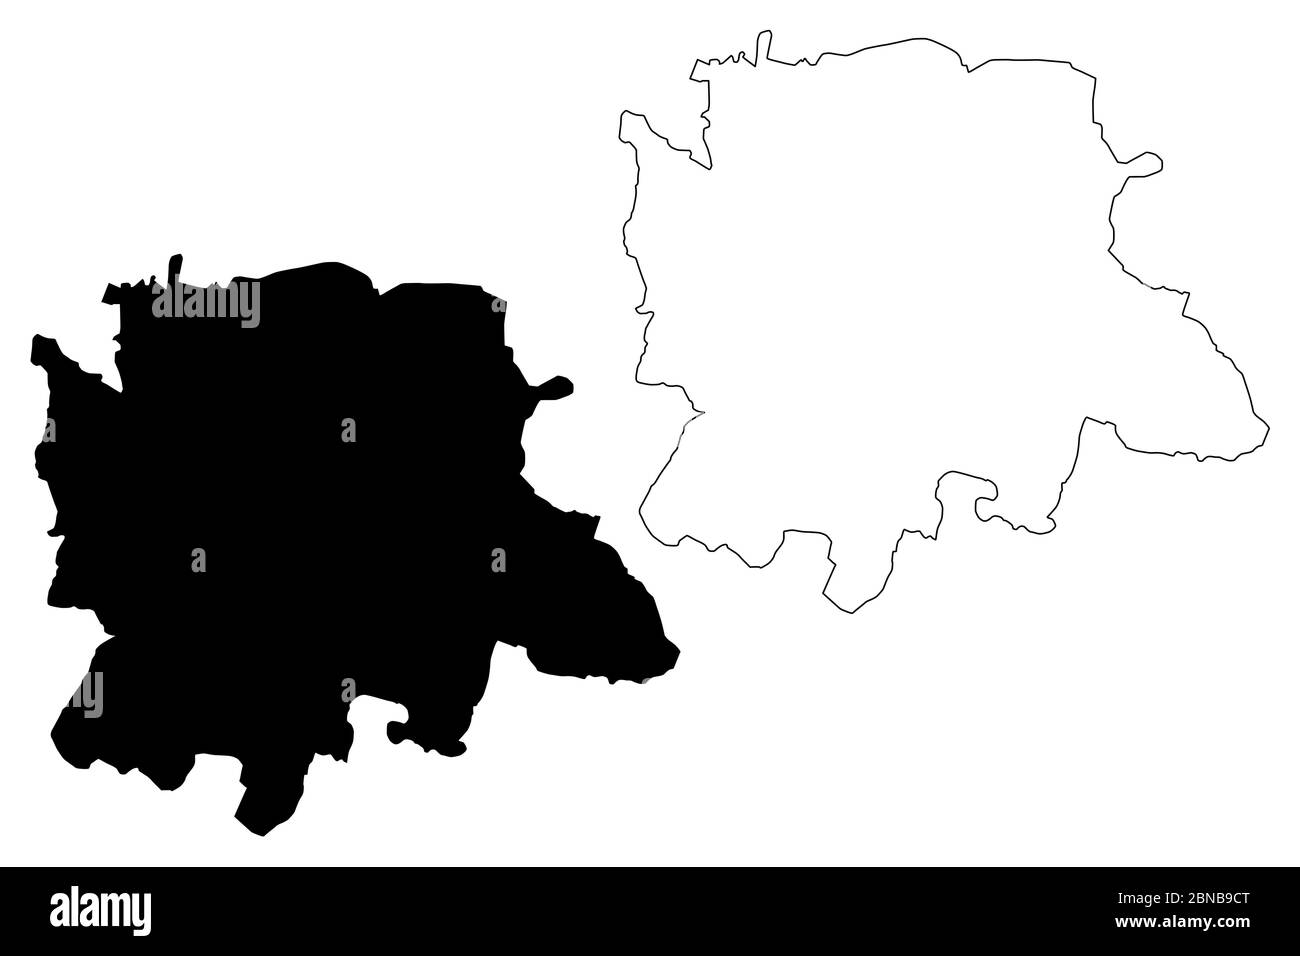 Bangalore City (Repubblica dell'India, Stato di Karnataka) mappa vettoriale illustrazione, scrimble sketch Città di Bengaluru mappa Illustrazione Vettoriale